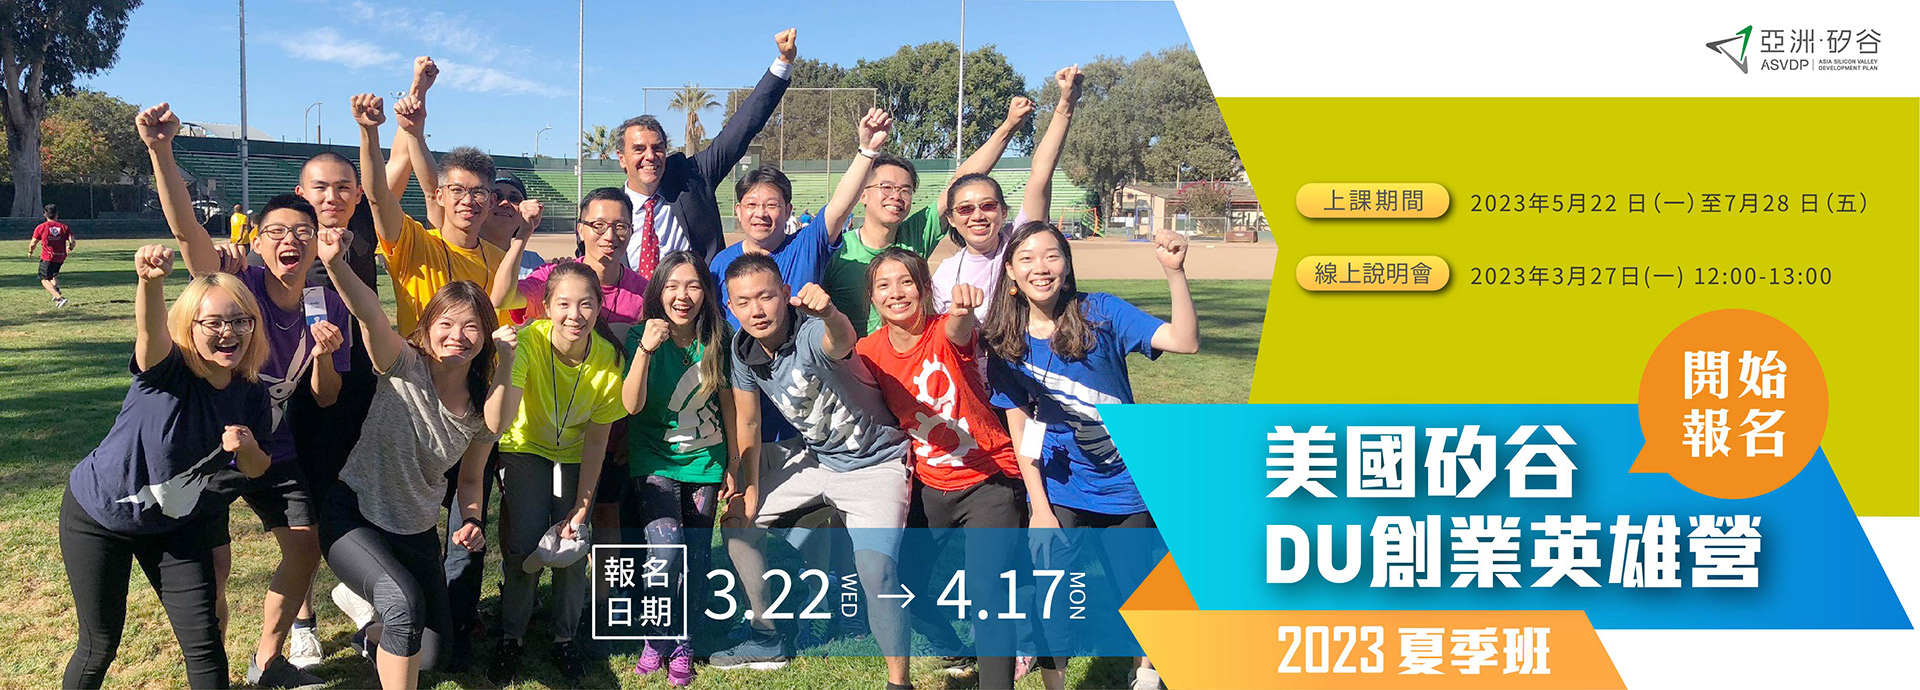 [競賽]亞洲・矽谷「2023 DU創業英雄營夏季班課程」甄選